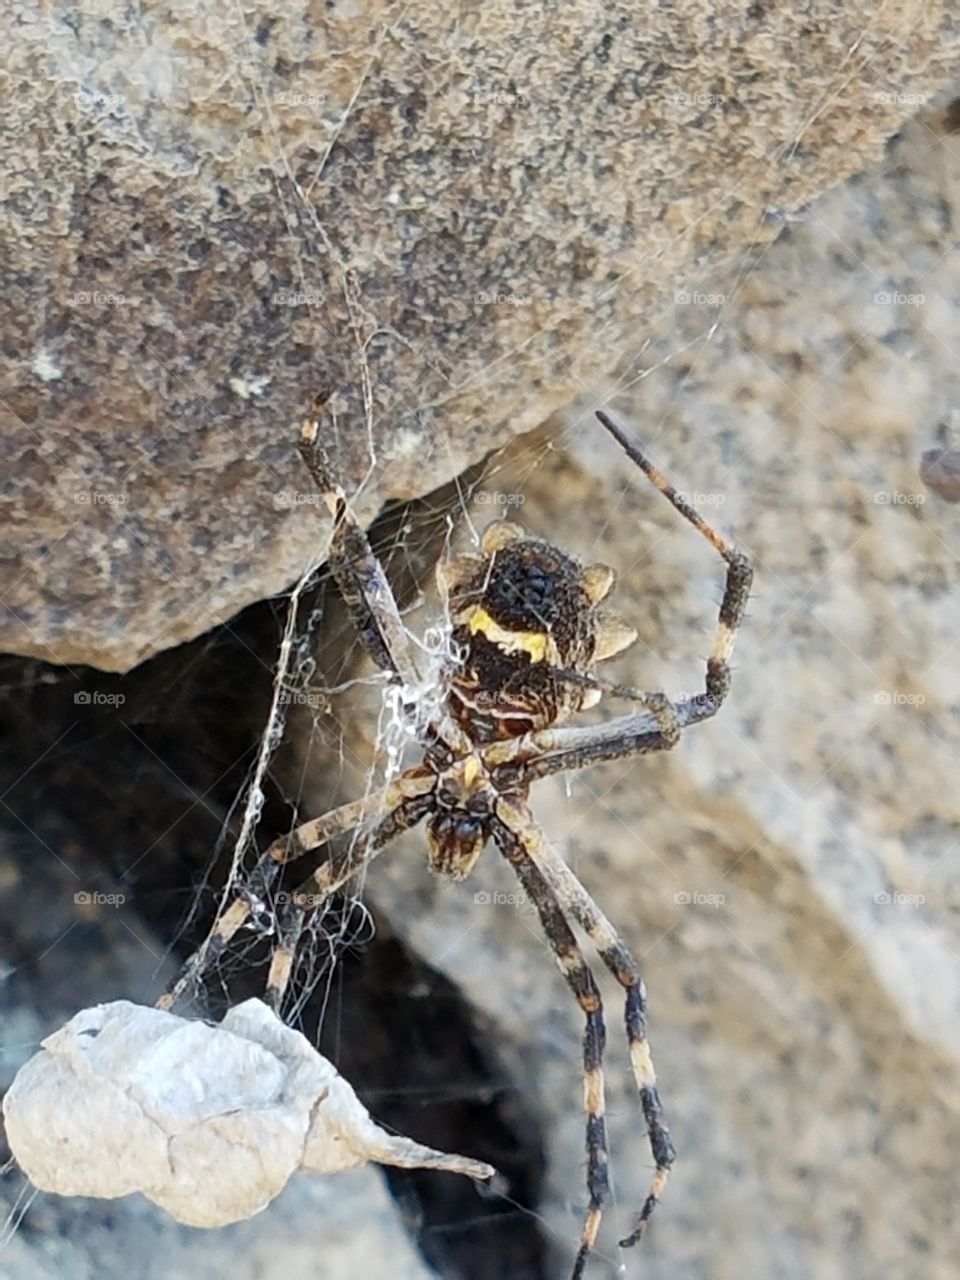 Peru spider